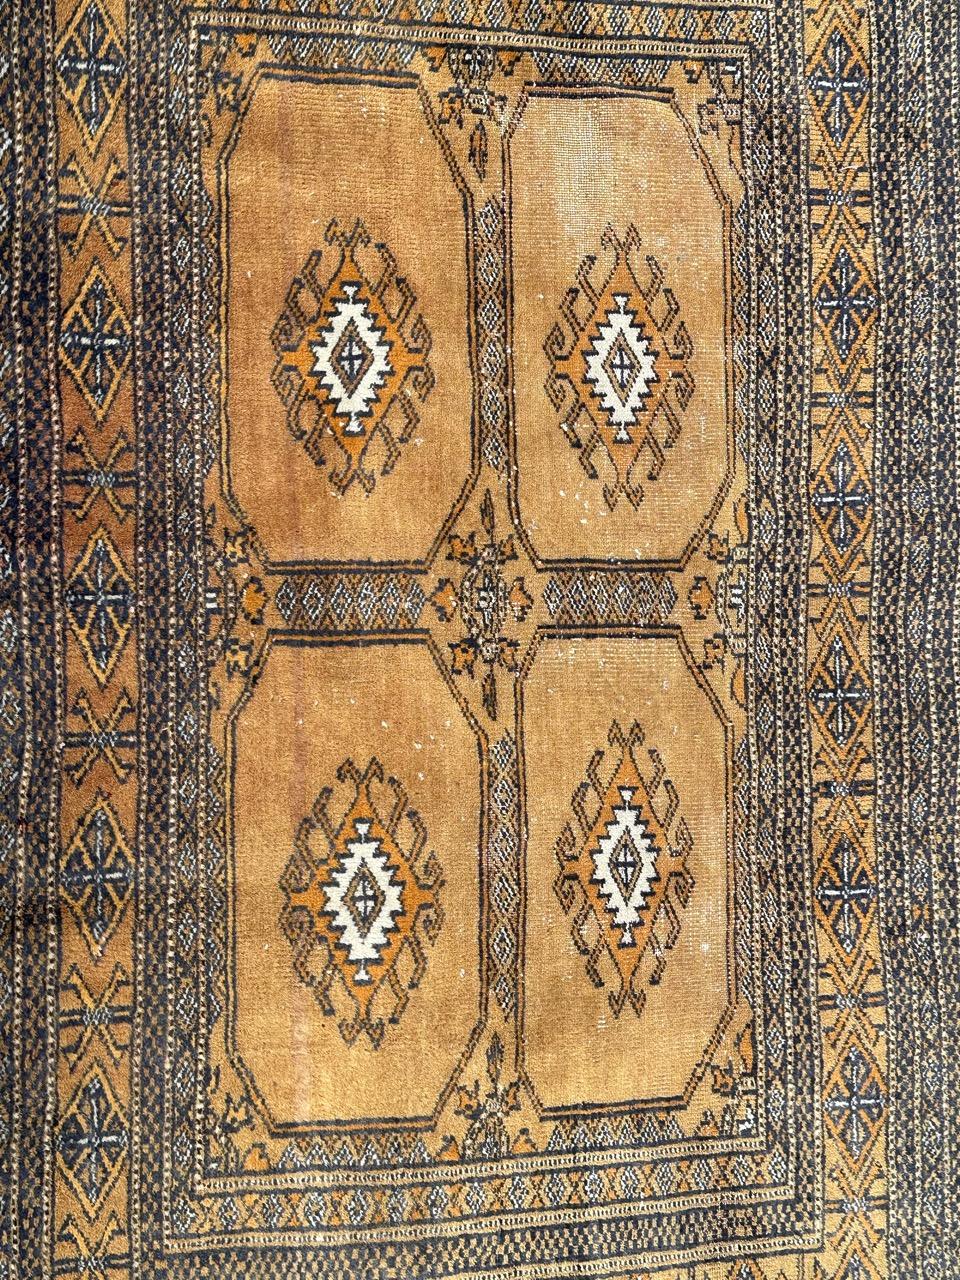 Schöne Vintage pakistanischen Turkmenen Tschowal-Stil Teppich mit schönen Bokhara Design und schöne Farben mit rot-orange, gelb, rosa, schwarz und weiß, ganz und fein von Hand mit Wolle auf Baumwollbasis geknüpft. 
Kleine alters- und